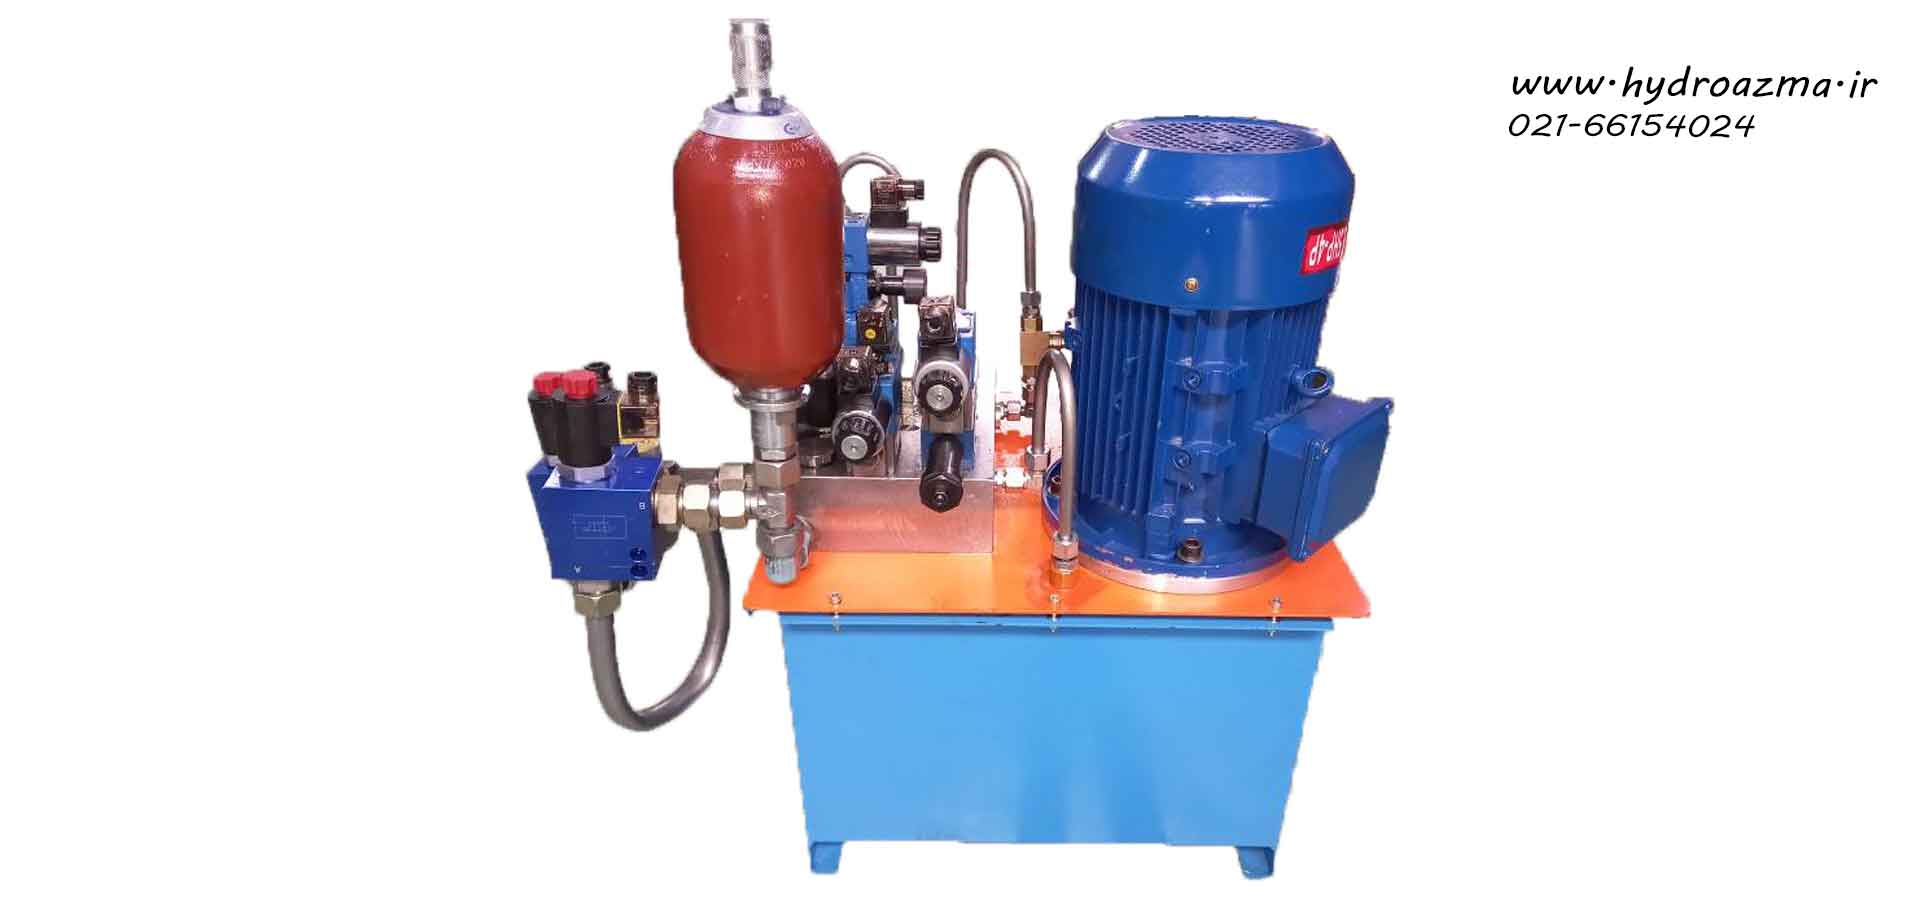 Crusher machine hydraulic unit